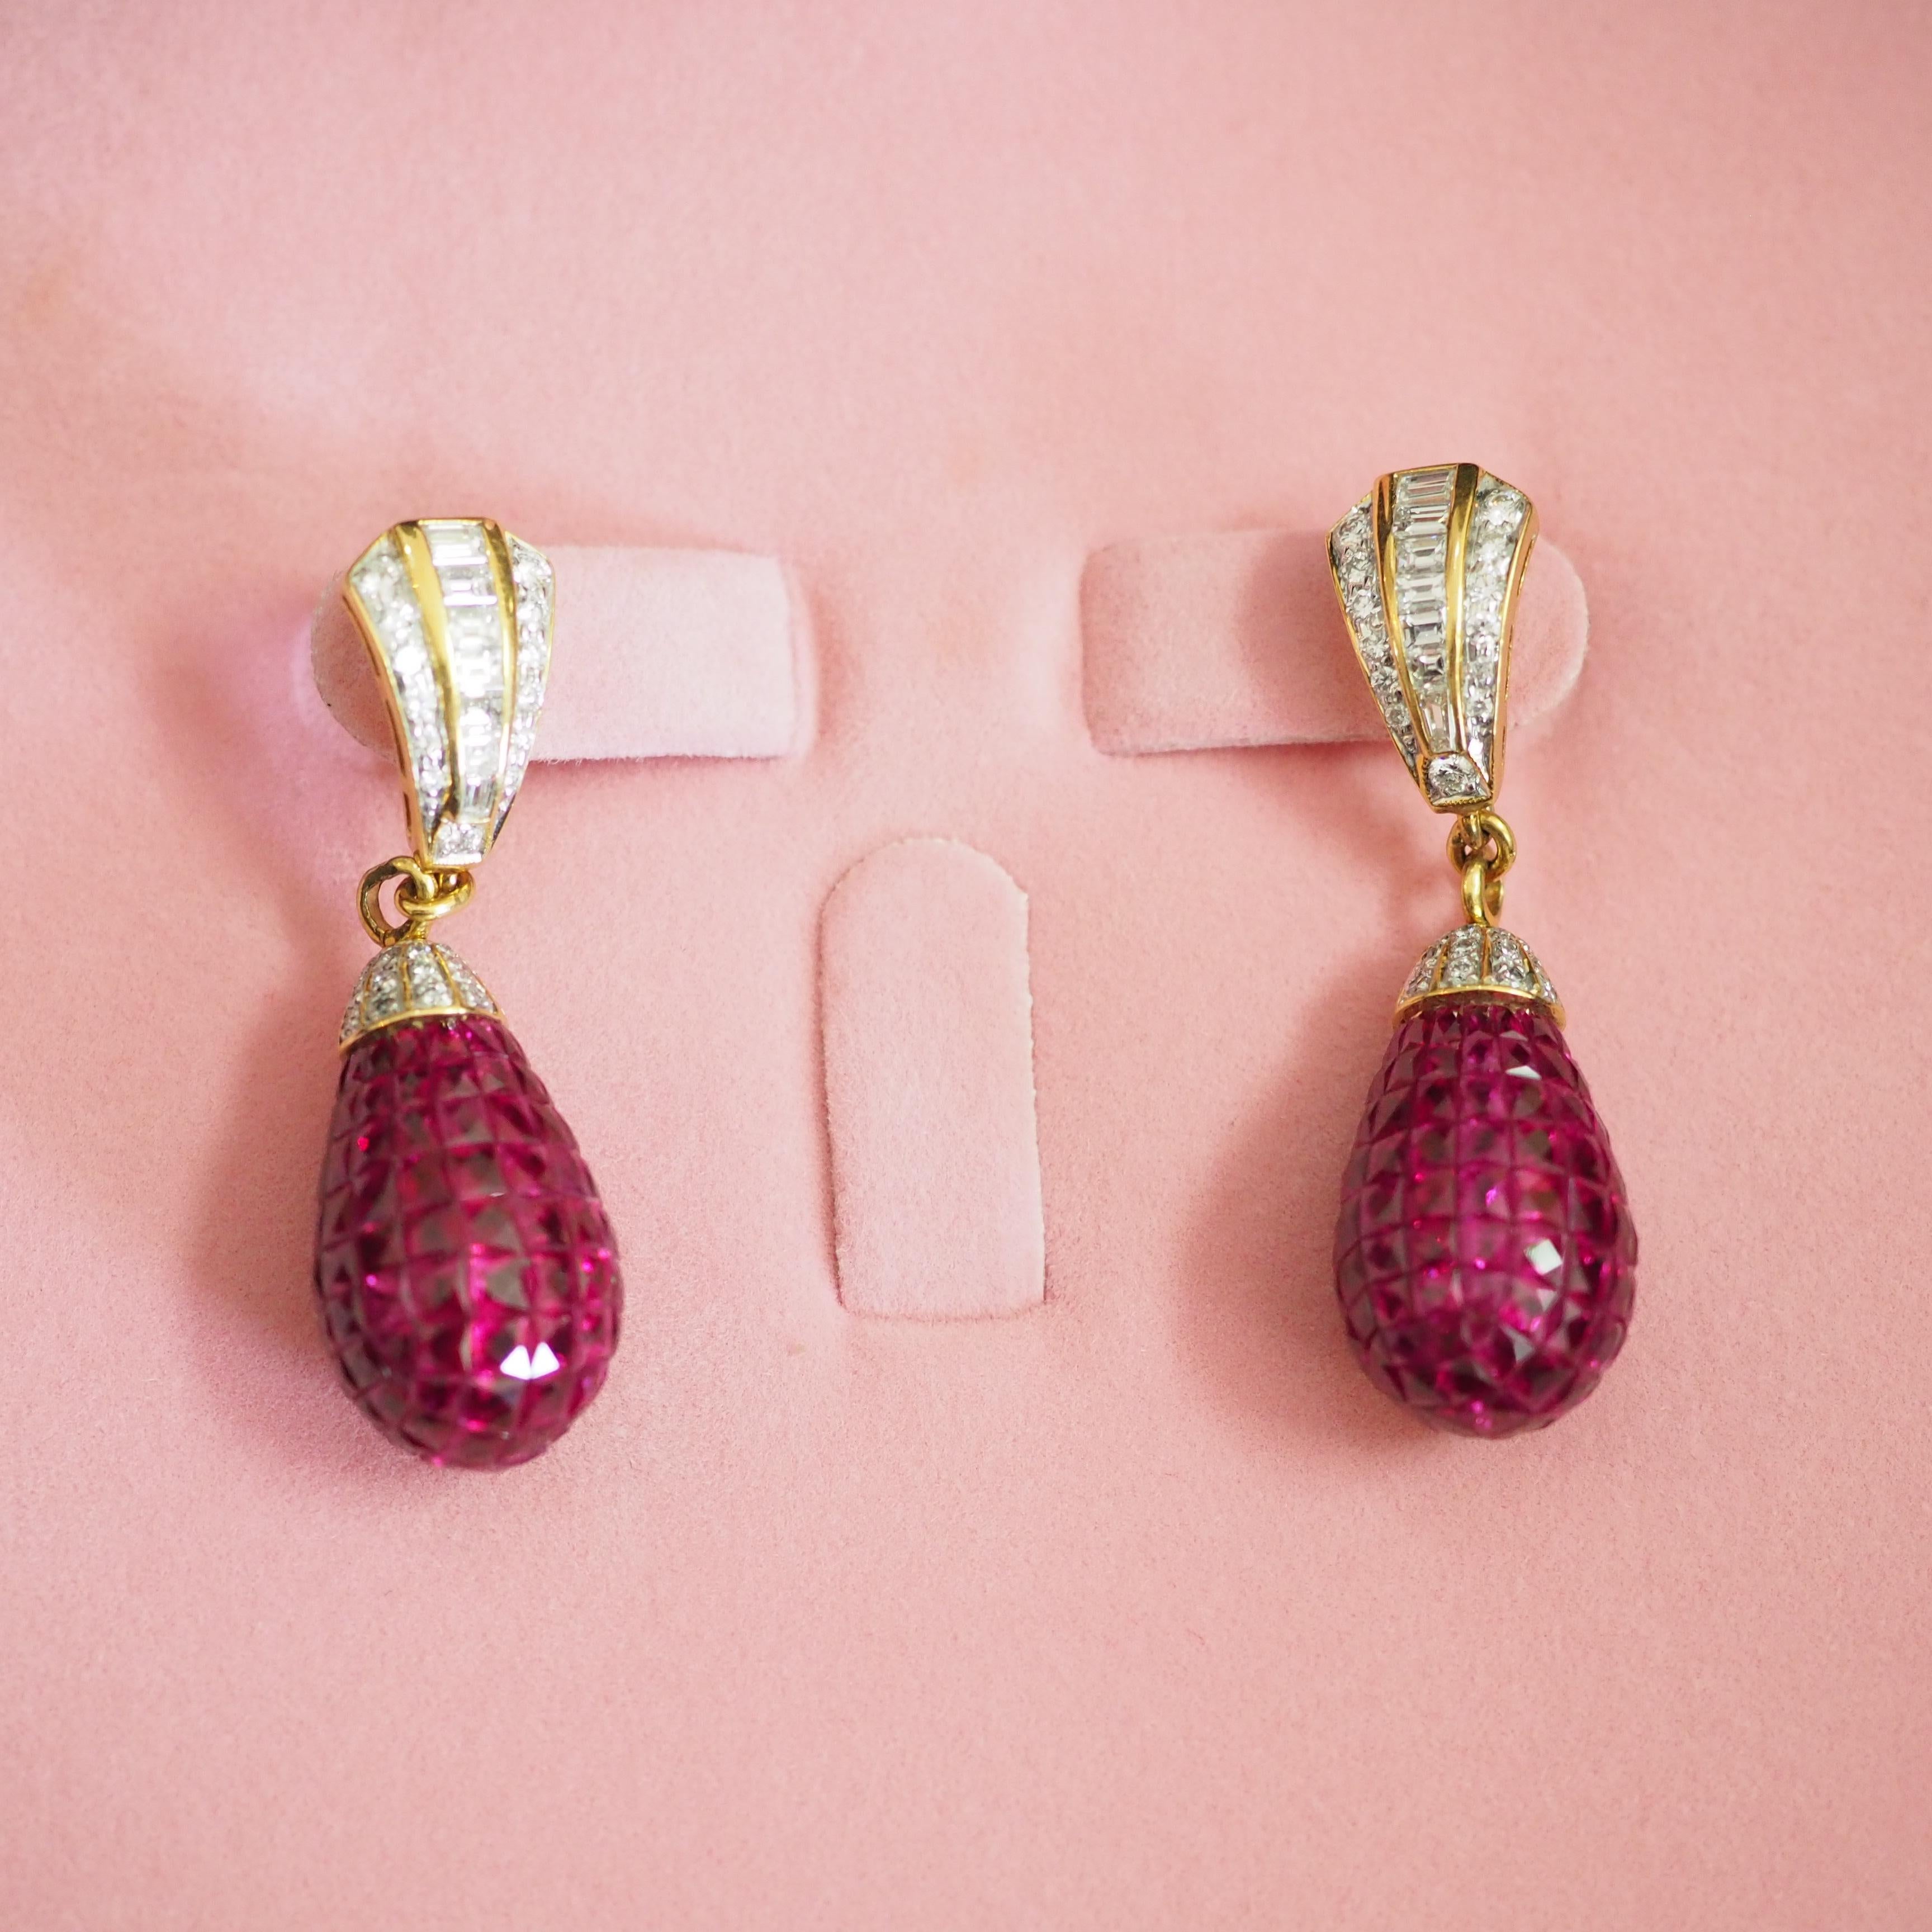 Cette magnifique boucle d'oreille Fabergé est un néo-vintage et n'a jamais été portée. Cette magnifique pièce est fabriquée en Thaïlande en or jaune 18 carats. La pièce est ornée de nombreux rubis naturels roses-rouges quadrillés et de divers